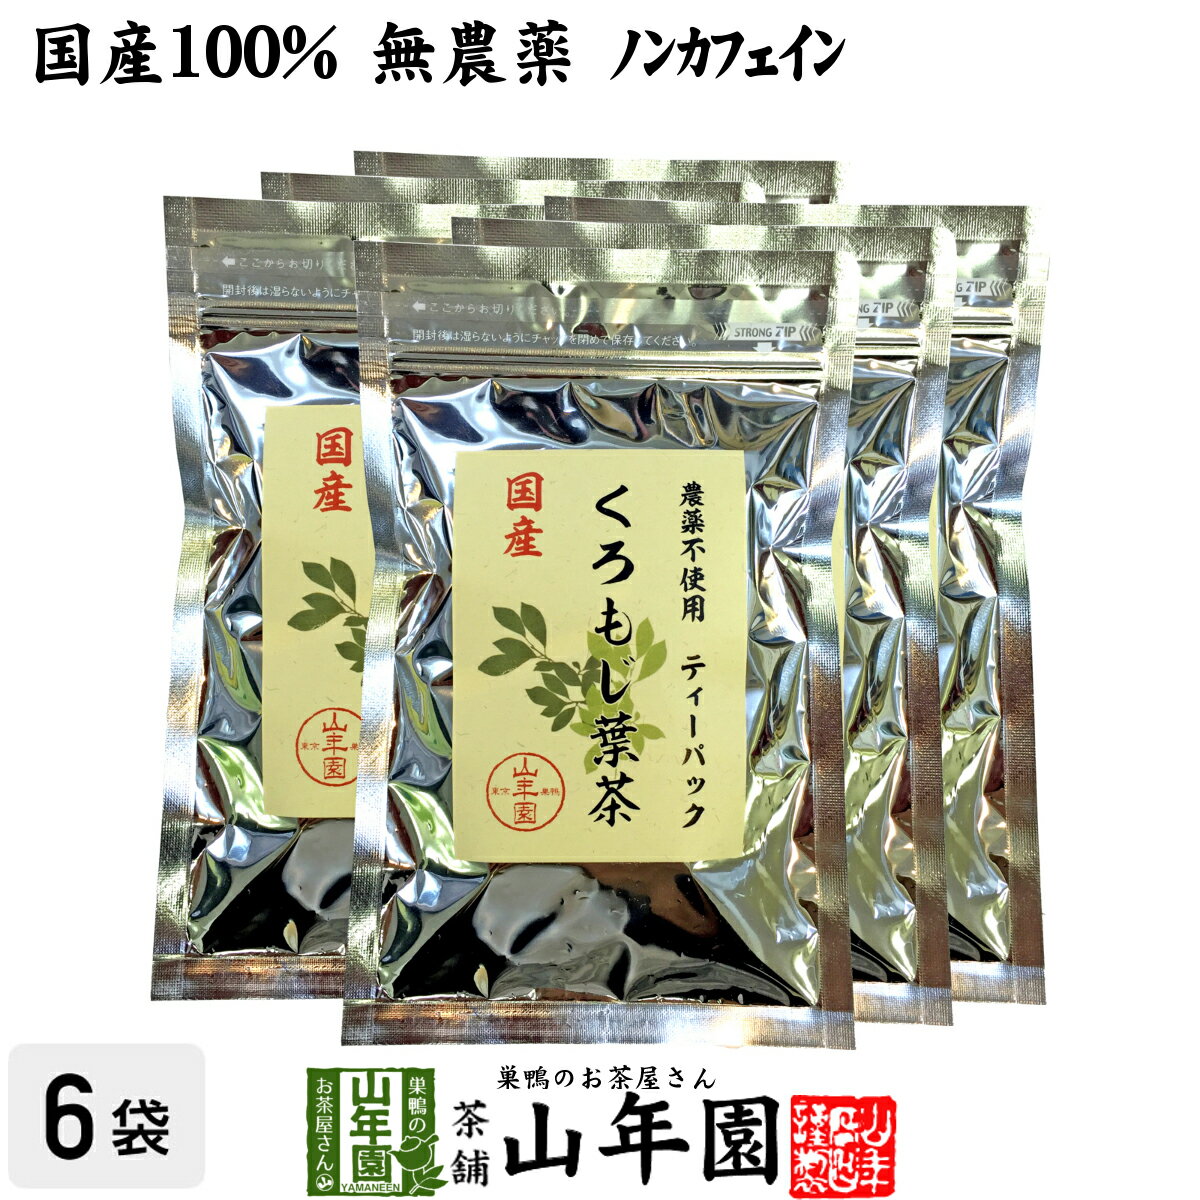 【国産 100%】クロモジ茶(葉) 2g×10パック×6袋セ